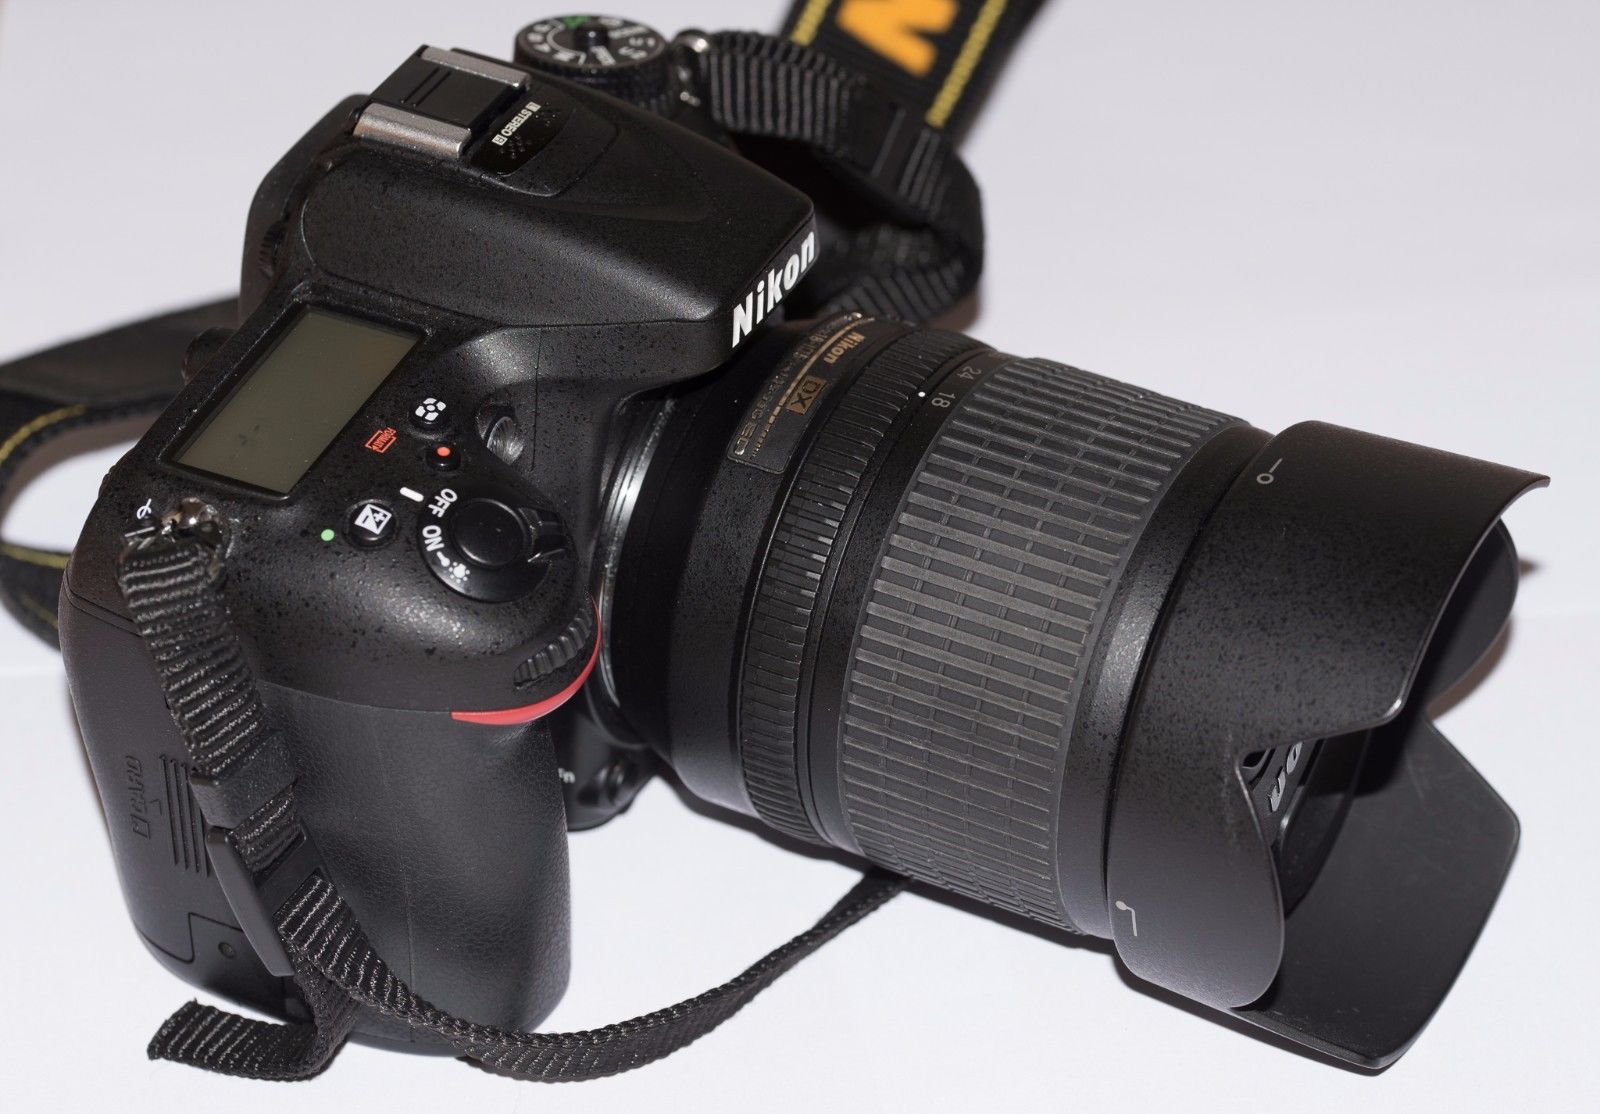 Nikon D D7100 24.1 MP SLR-Digitalkamera - Schwarz (Kit m/ AF-S DX 18-105mm f/3.5